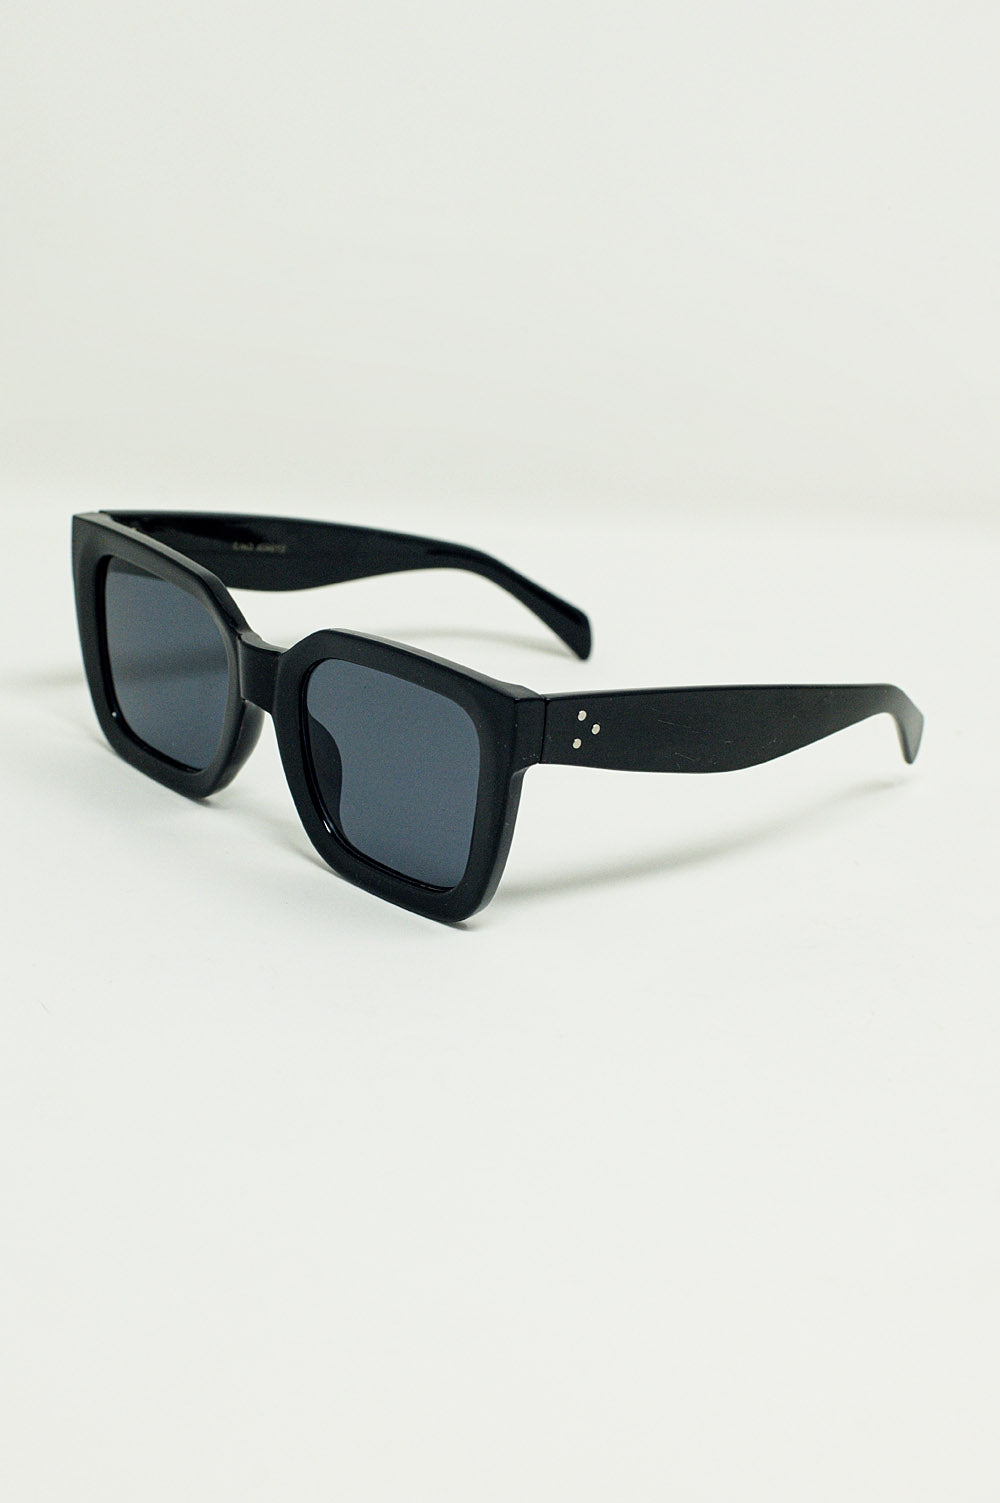 Q2 Squared Sunglasses With Dark Lenses in Black